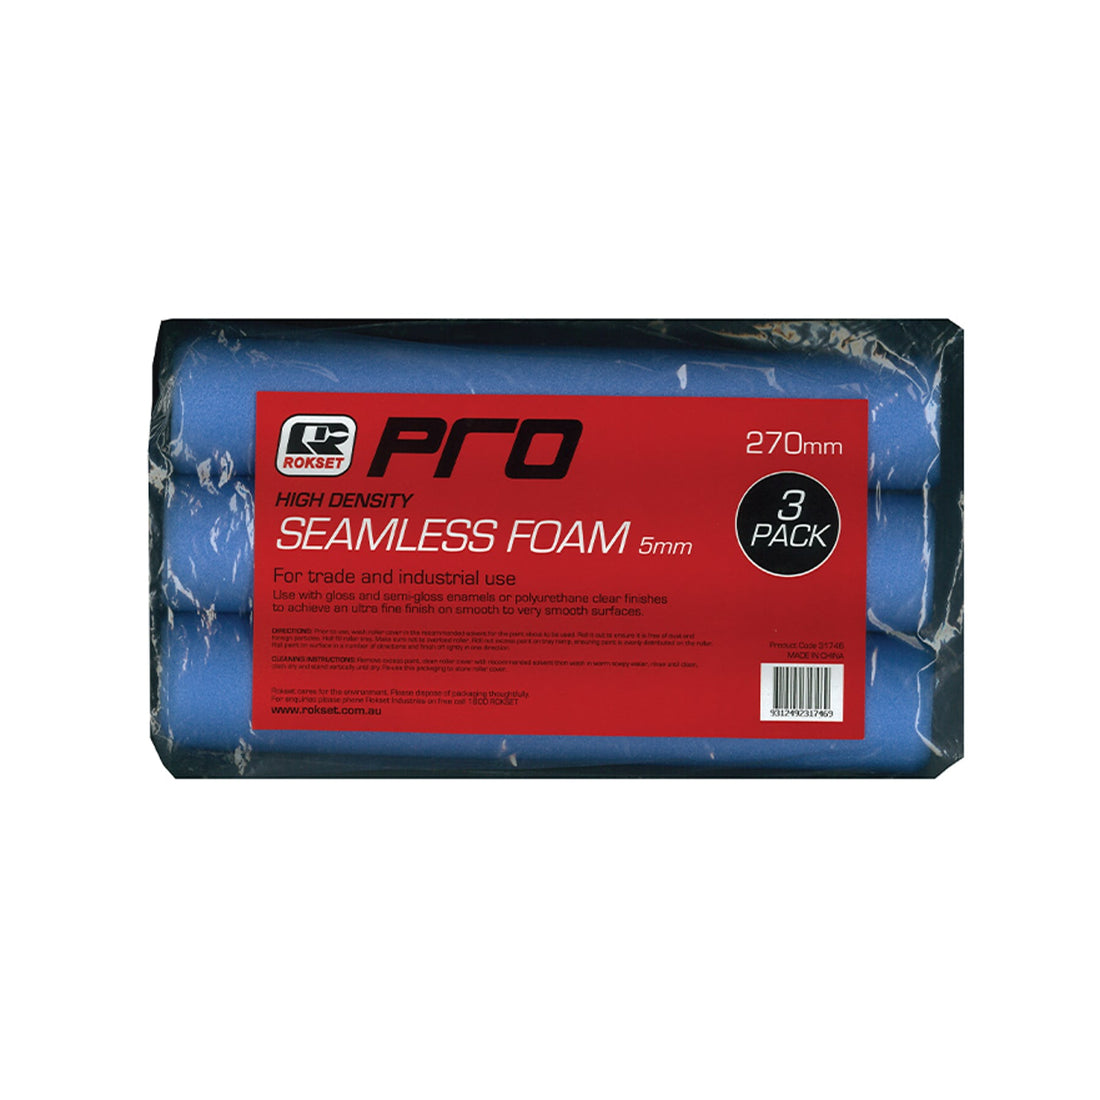 ROKSET Pro Seamless Foam Roller